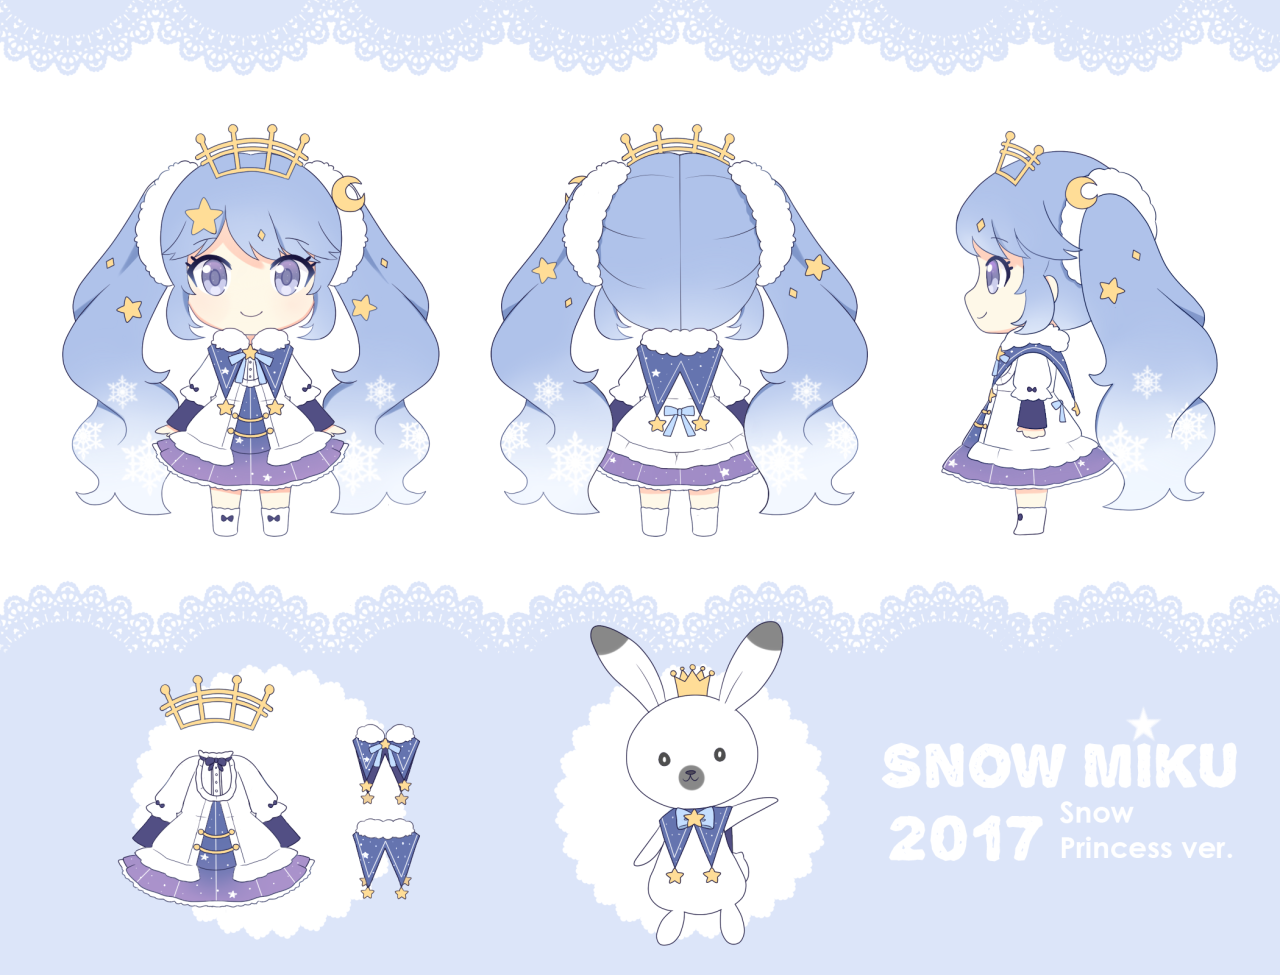 Nendoroid Es Zumodelimon My Design For The Snow Miku 17